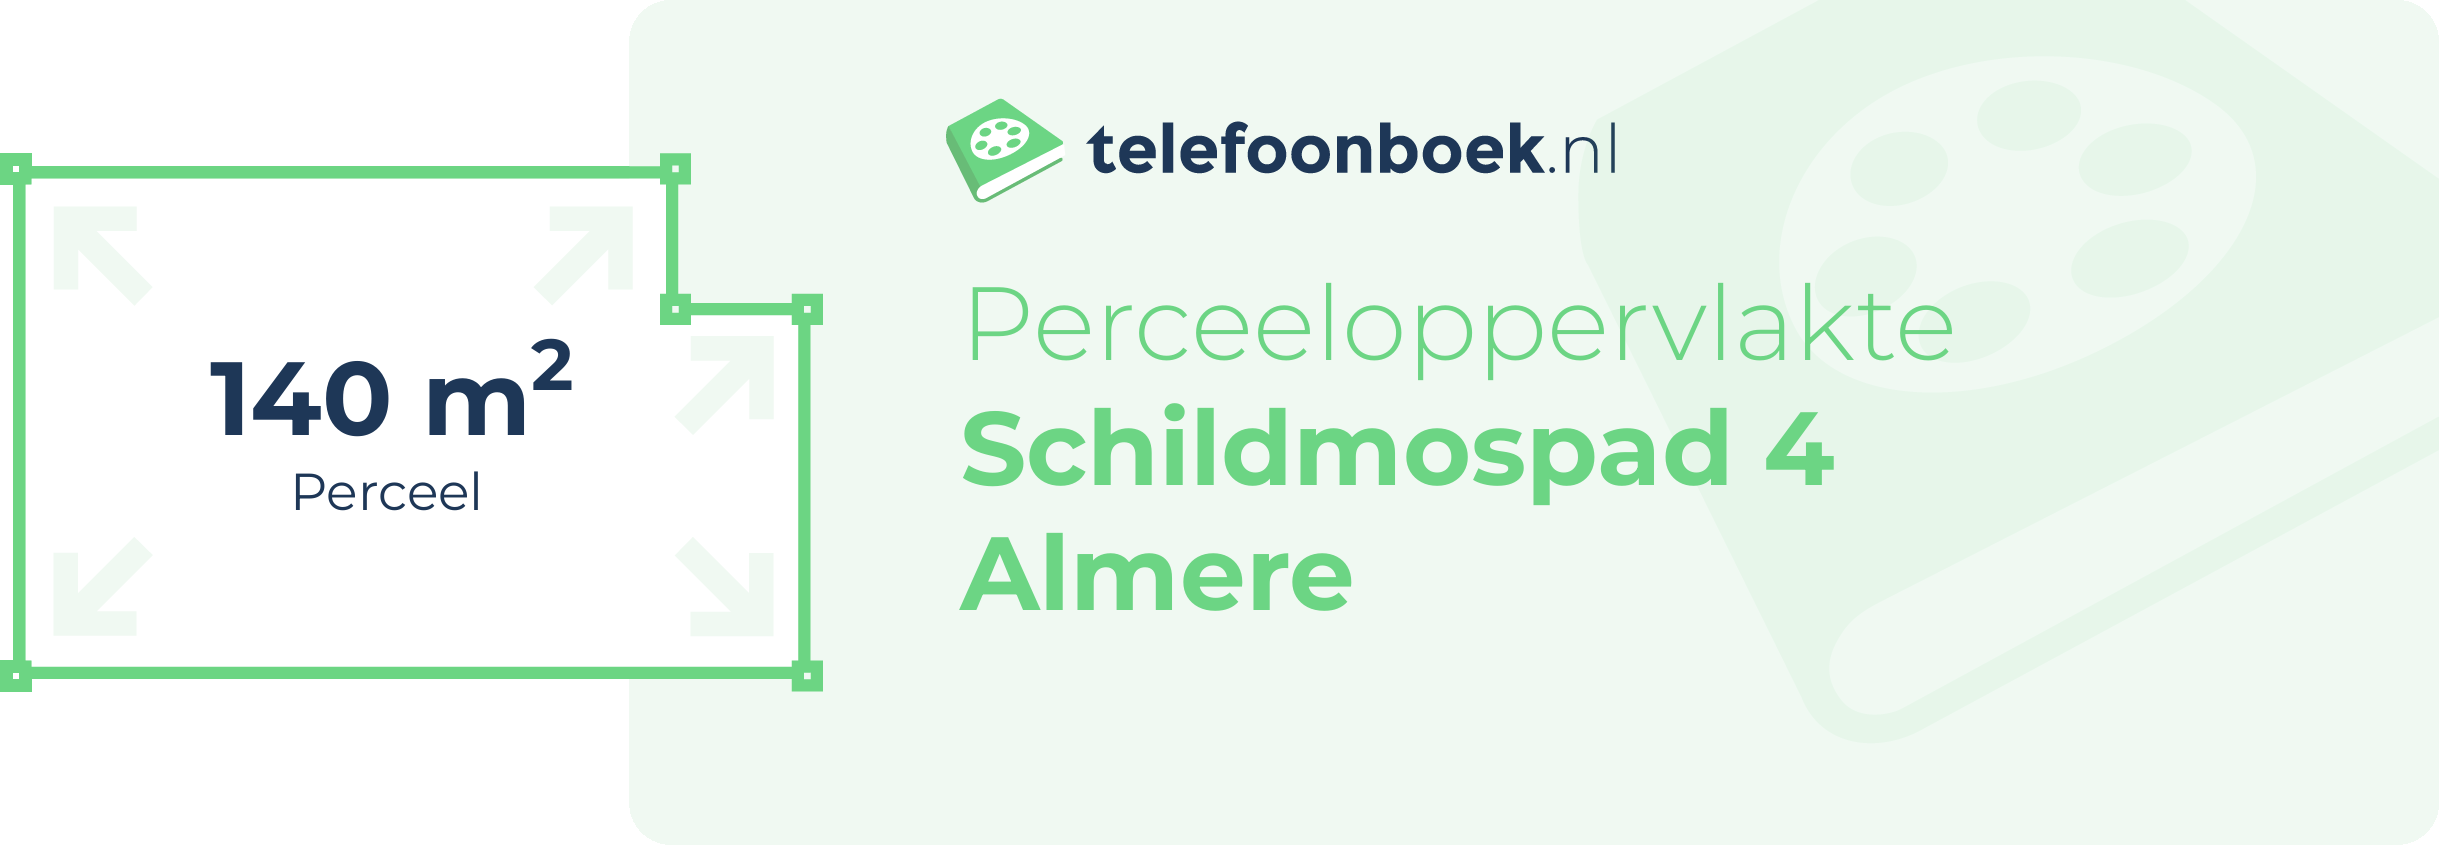 Perceeloppervlakte Schildmospad 4 Almere